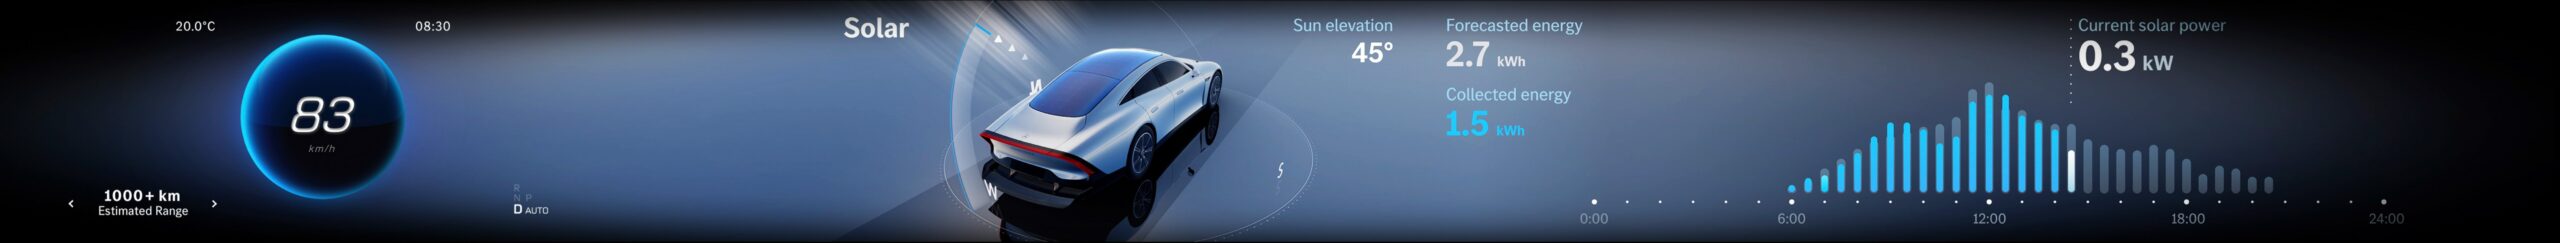 Mercedes Benz Vision EQXX Concept Solar HMI